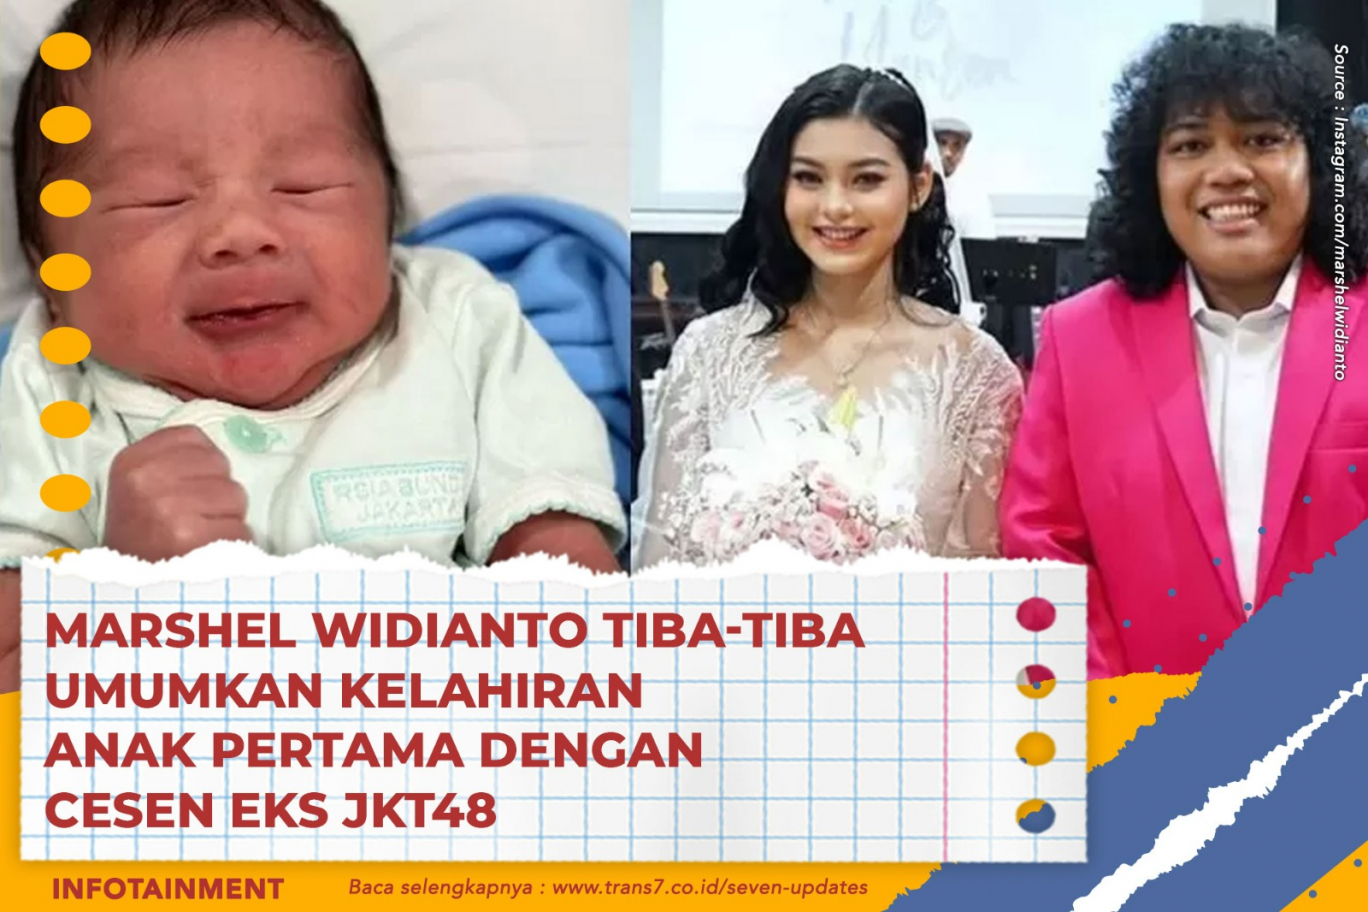 Marshel Widianto Tiba-Tiba Umumkan Kelahiran Anak Pertama Dengan Cesen Eks JKT48